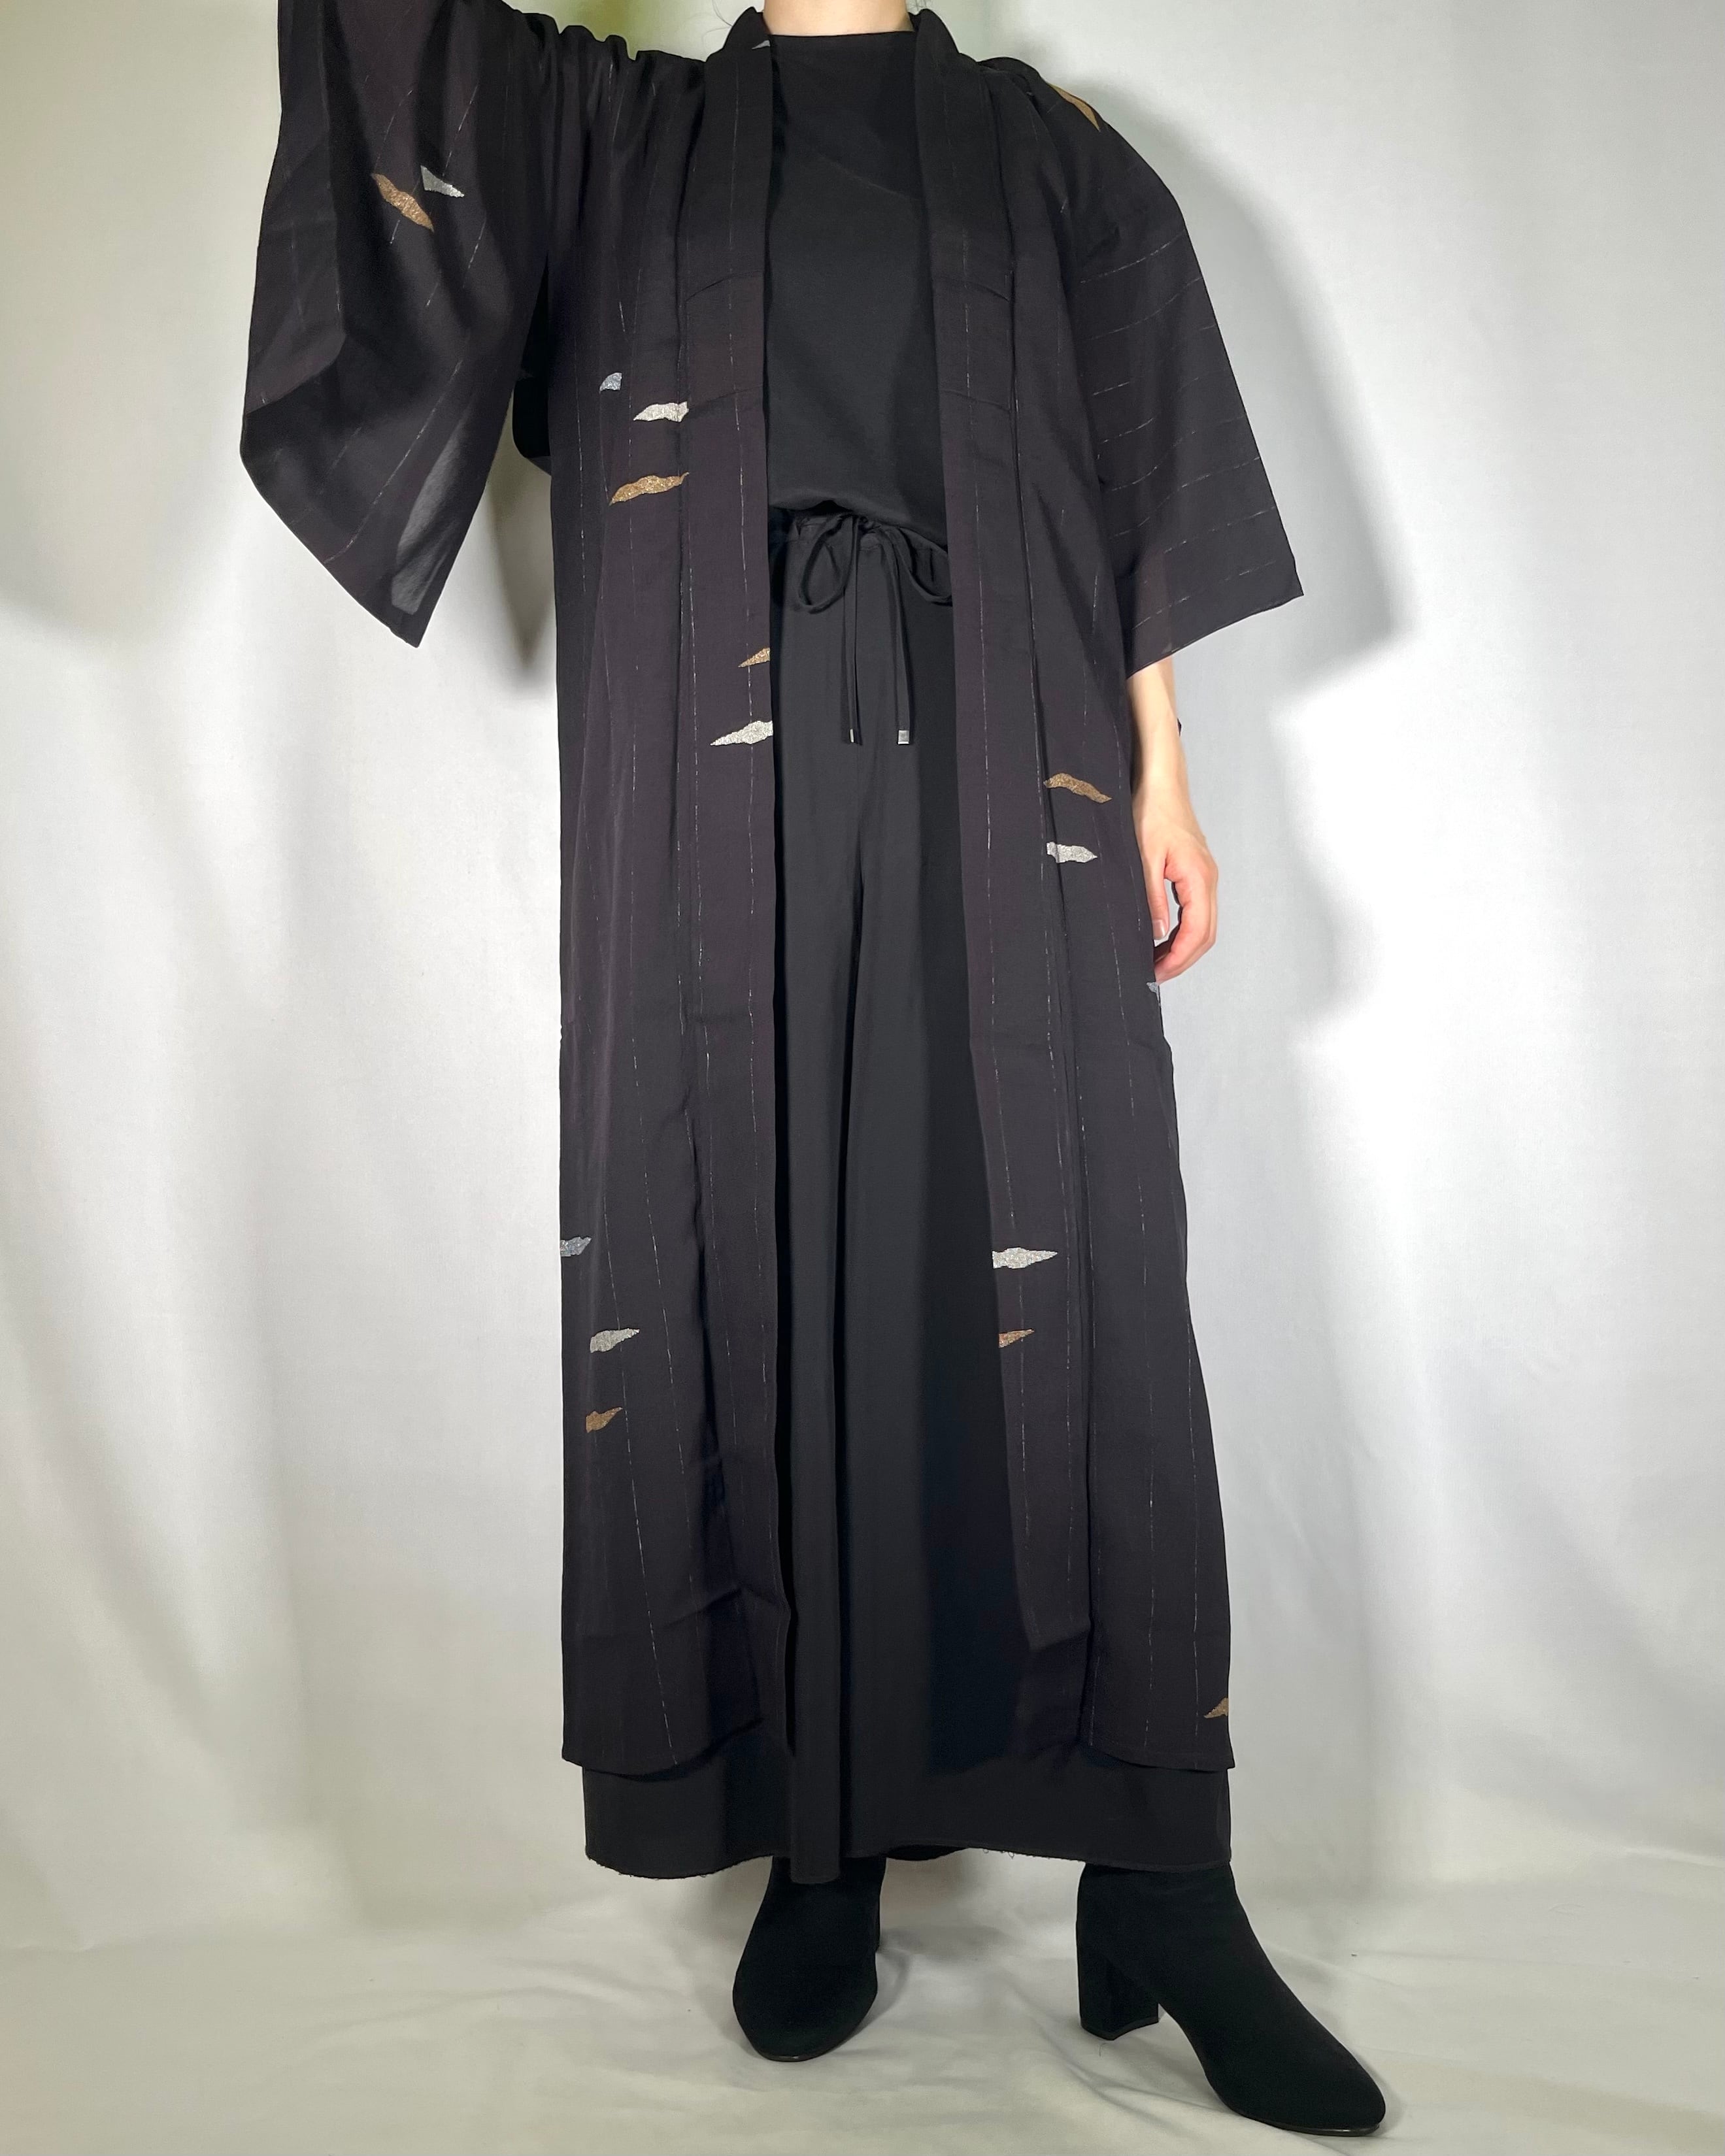 11887】 着物リメイク ロングコート 夏用 薄手 透け感 黒 抽象模様